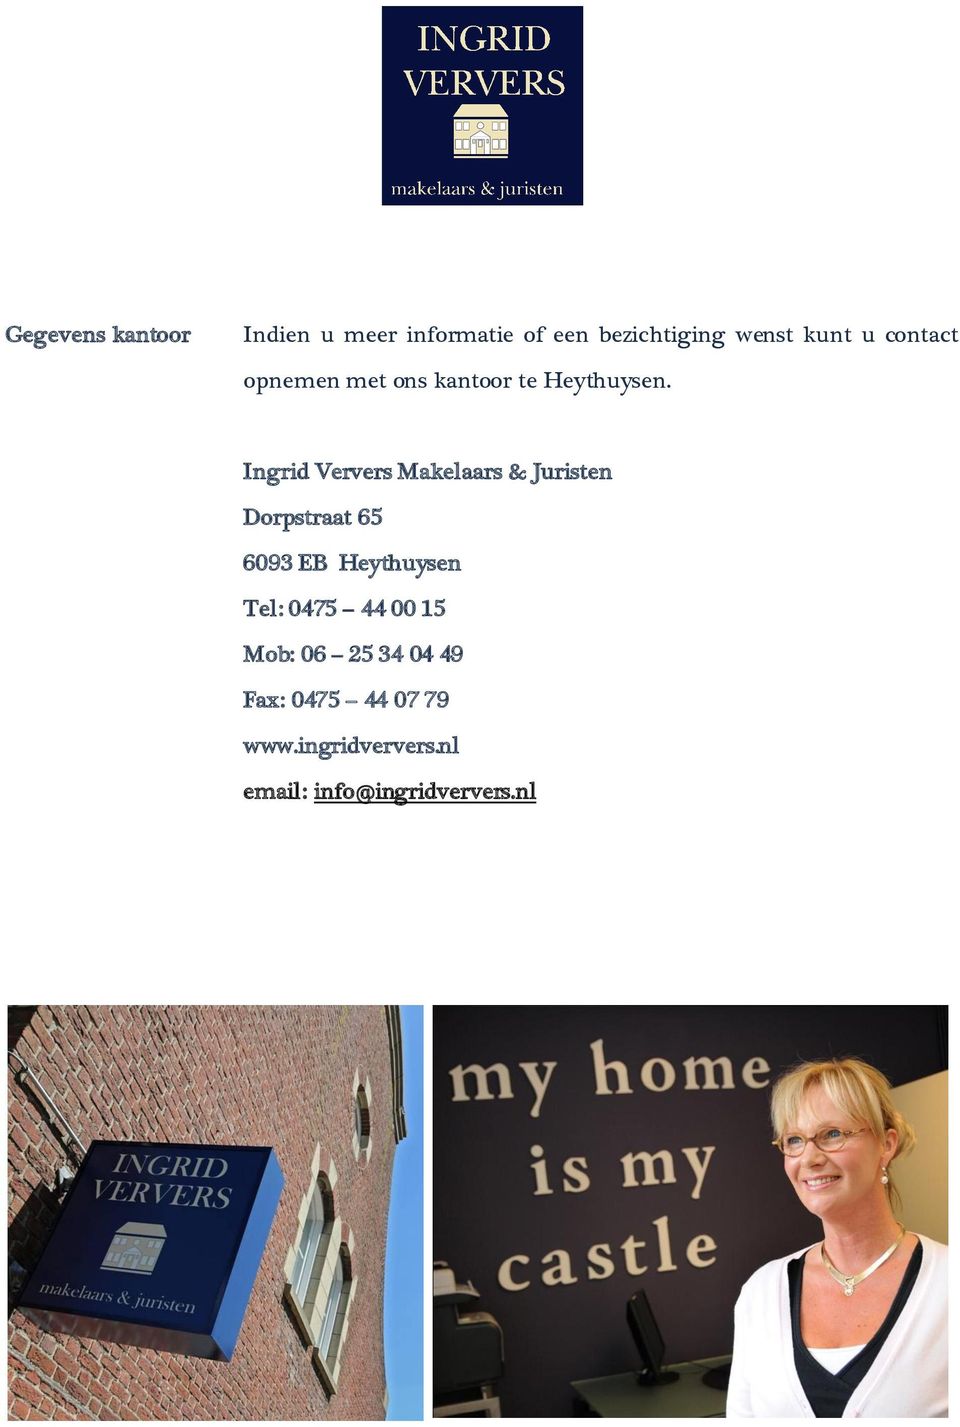 Ingrid Ververs Makelaars & Juristen Dorpstraat 65 6093 EB Heythuysen Tel: